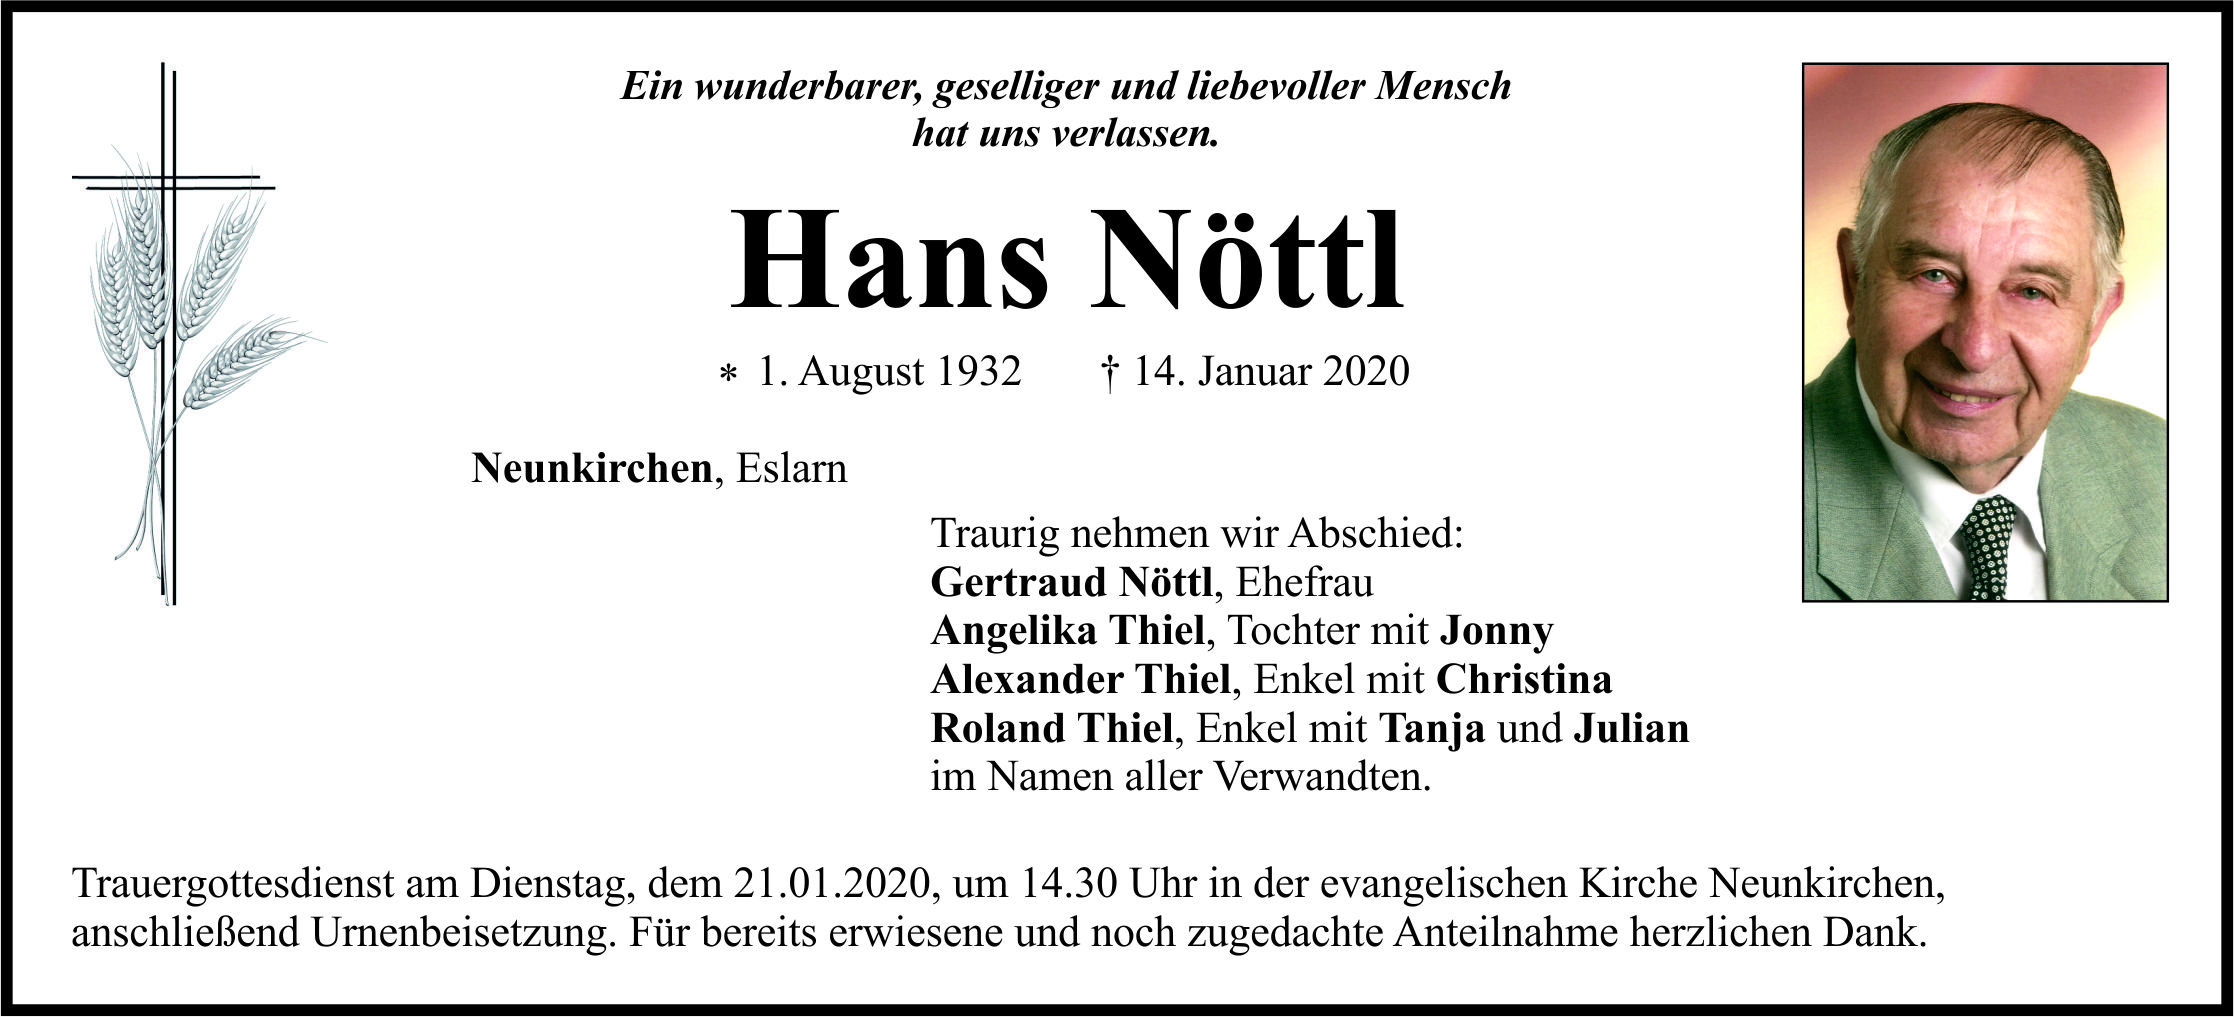 Traueranzeige Hans Nöttl, Neunkirchen